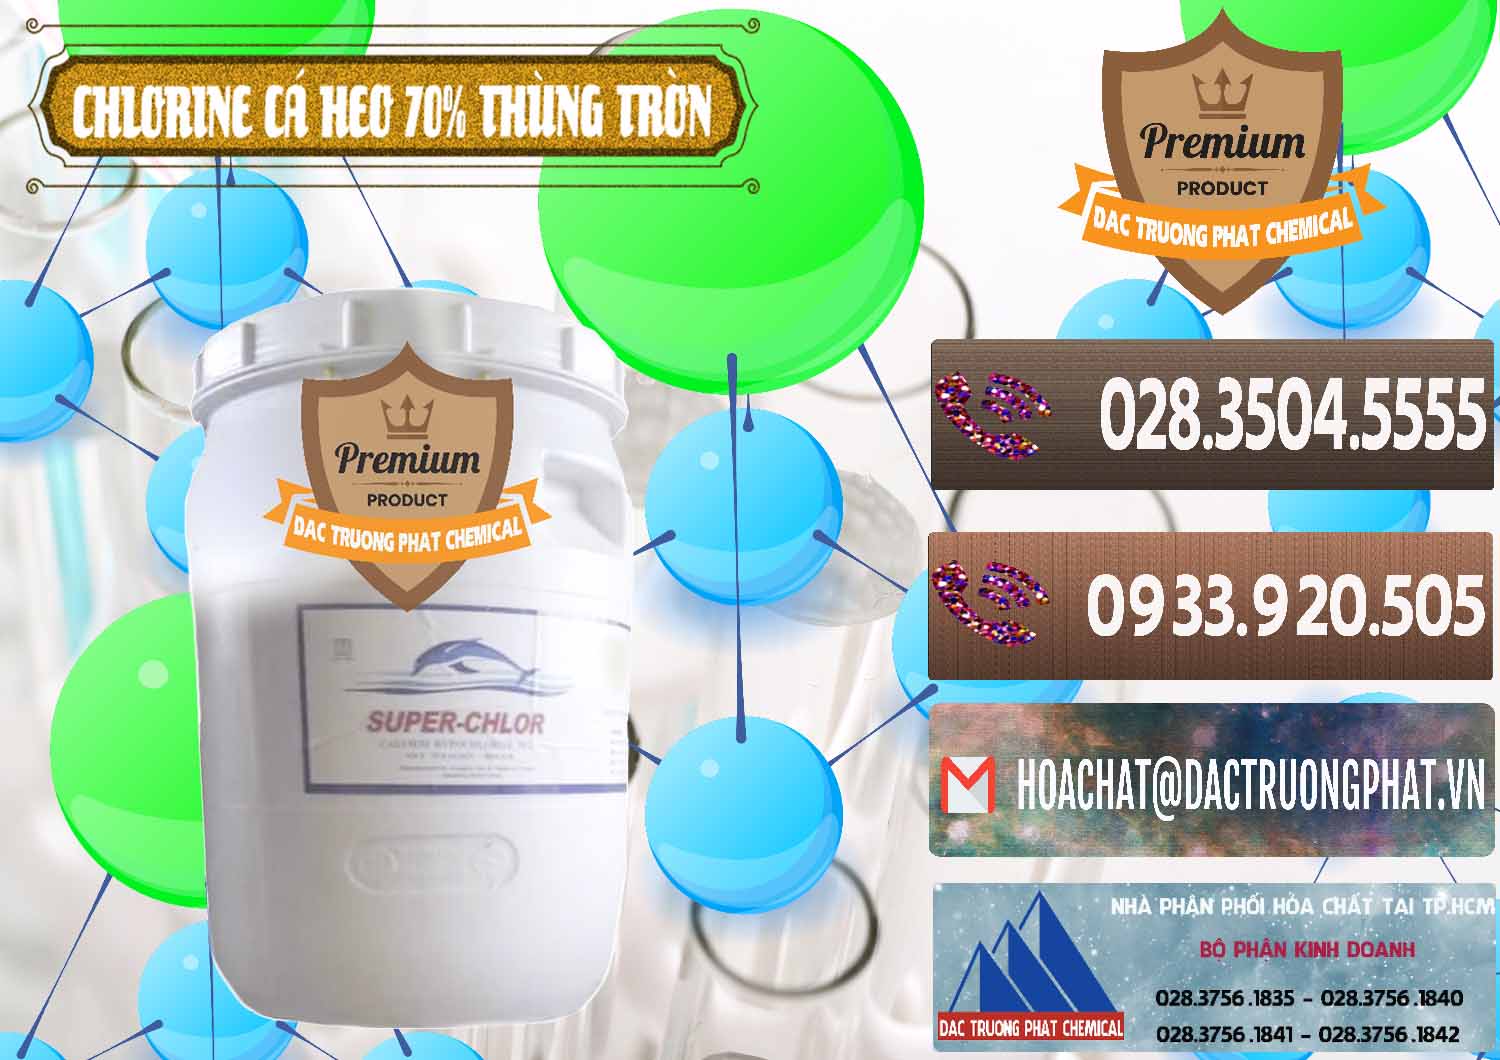 Đơn vị chuyên phân phối ( bán ) Clorin - Chlorine Cá Heo 70% Super Chlor Thùng Tròn Nắp Trắng Trung Quốc China - 0239 - Đơn vị cung cấp & phân phối hóa chất tại TP.HCM - hoachatviet.net